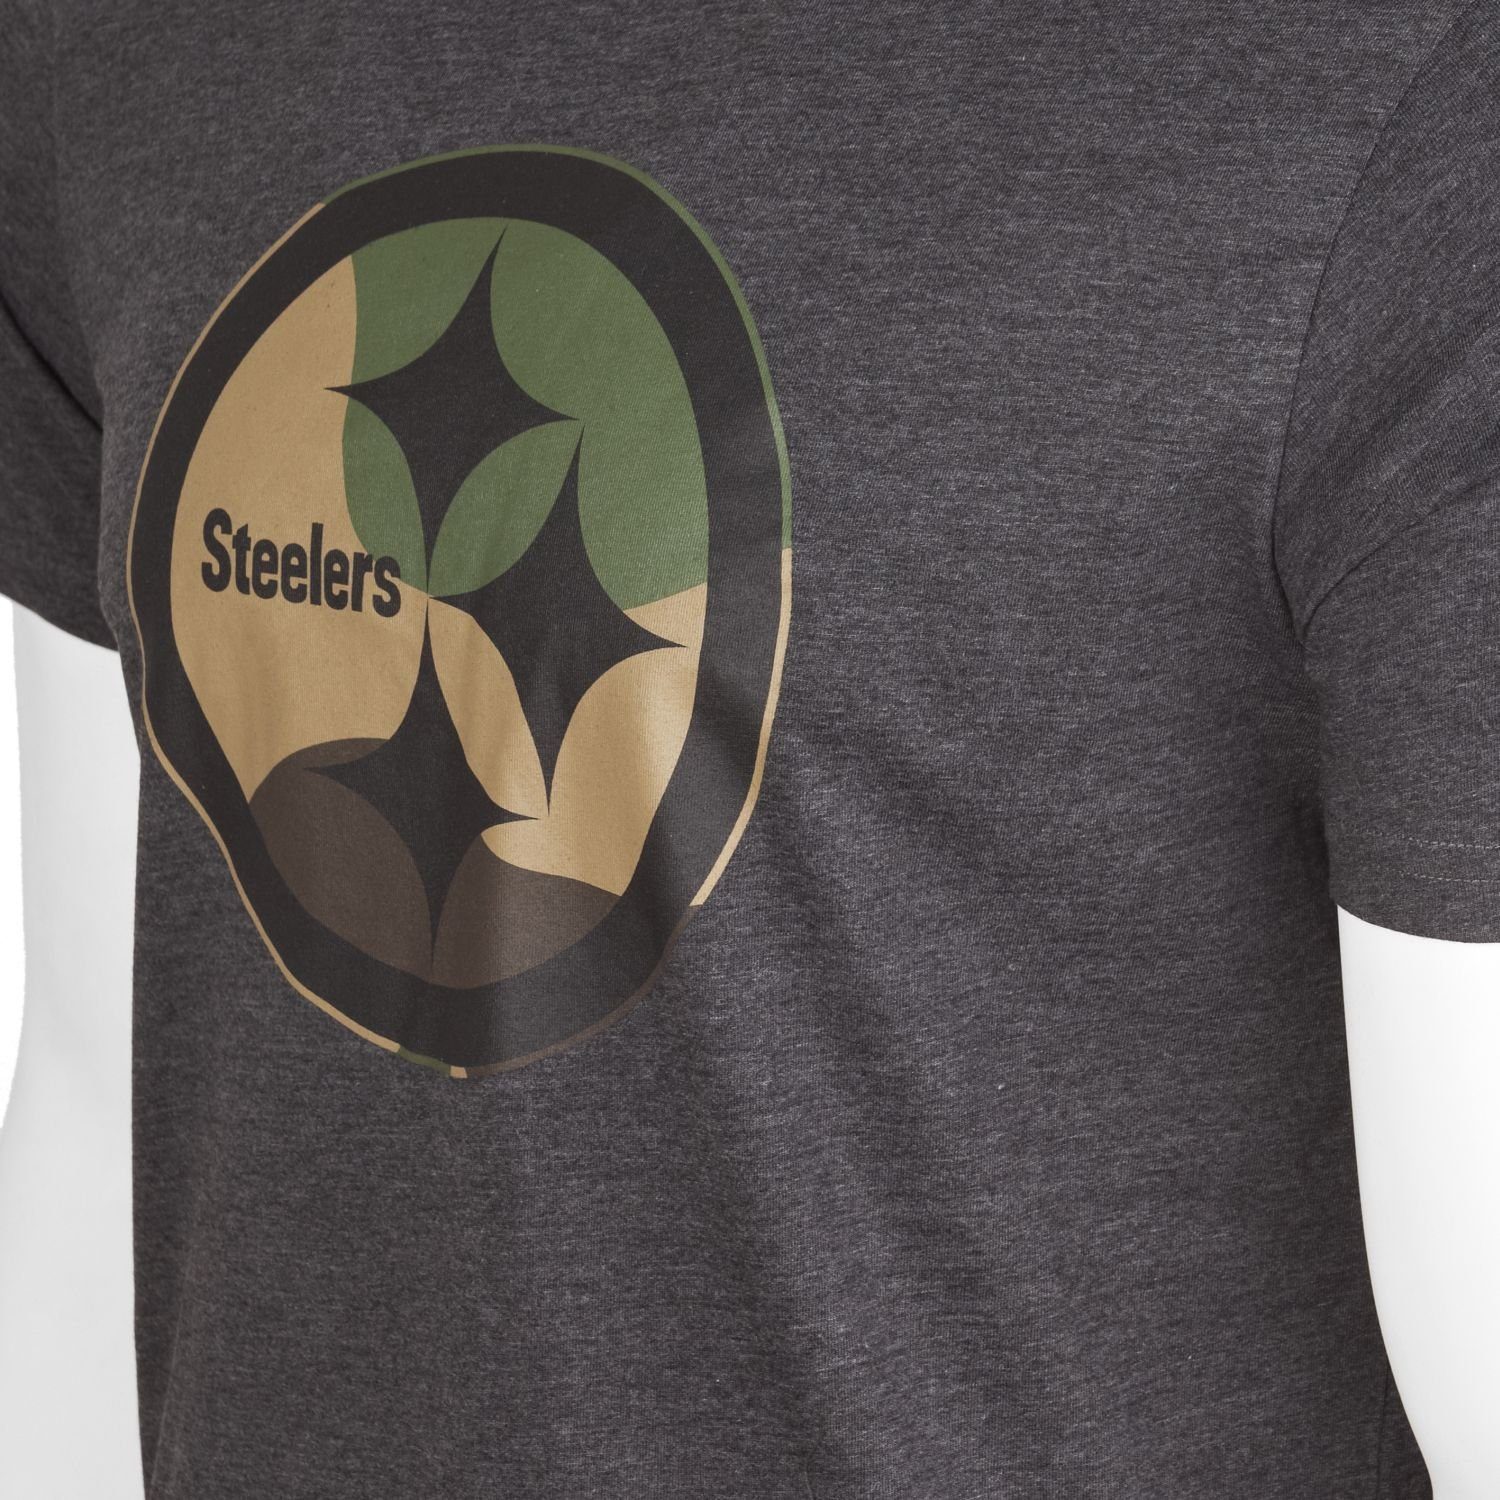 Logo Era charcoal Team Pittsburgh NFL Print-Shirt New Steelers